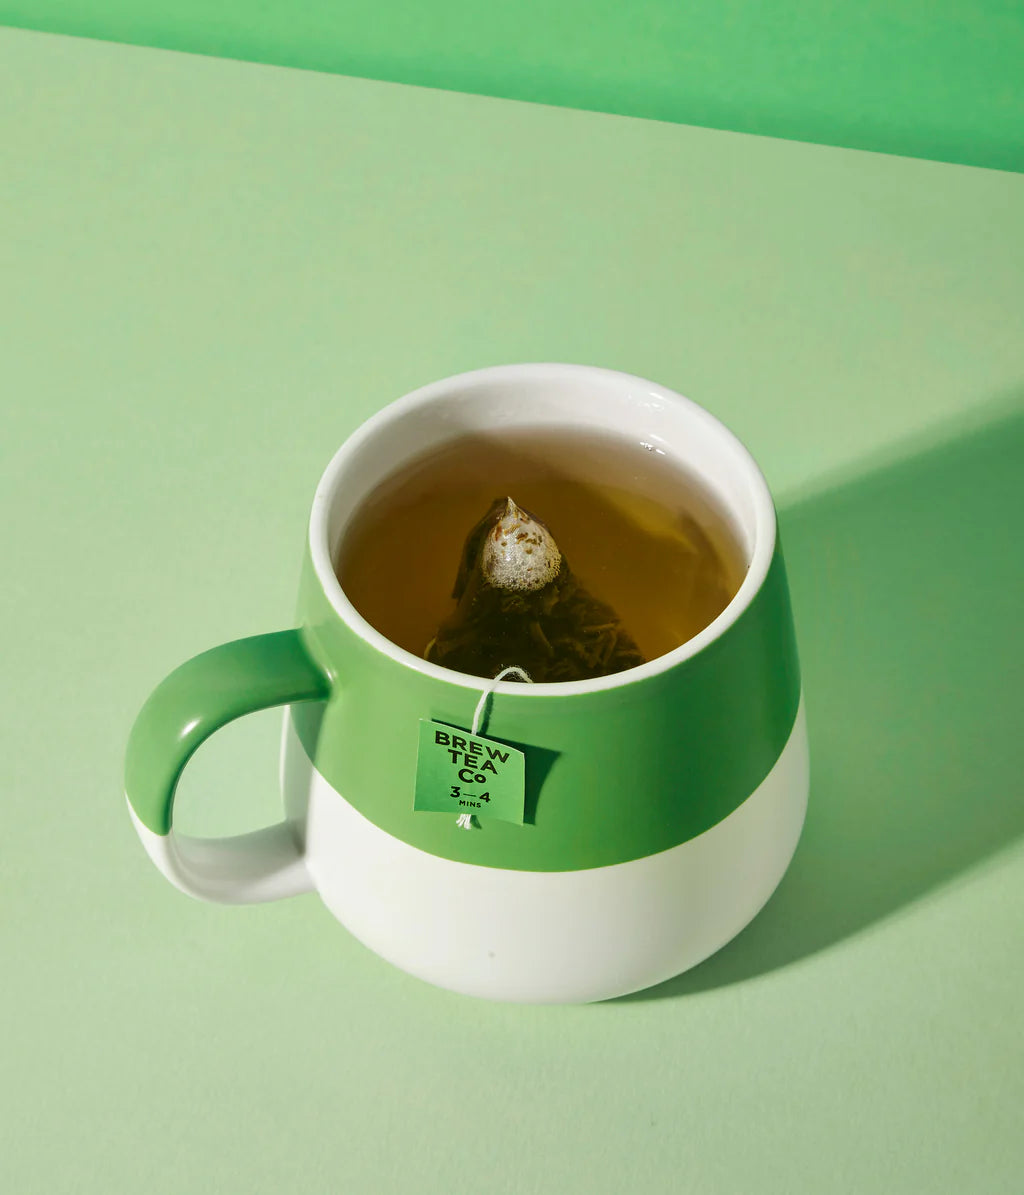 Brew Tea Co. Yunnan Green Tea